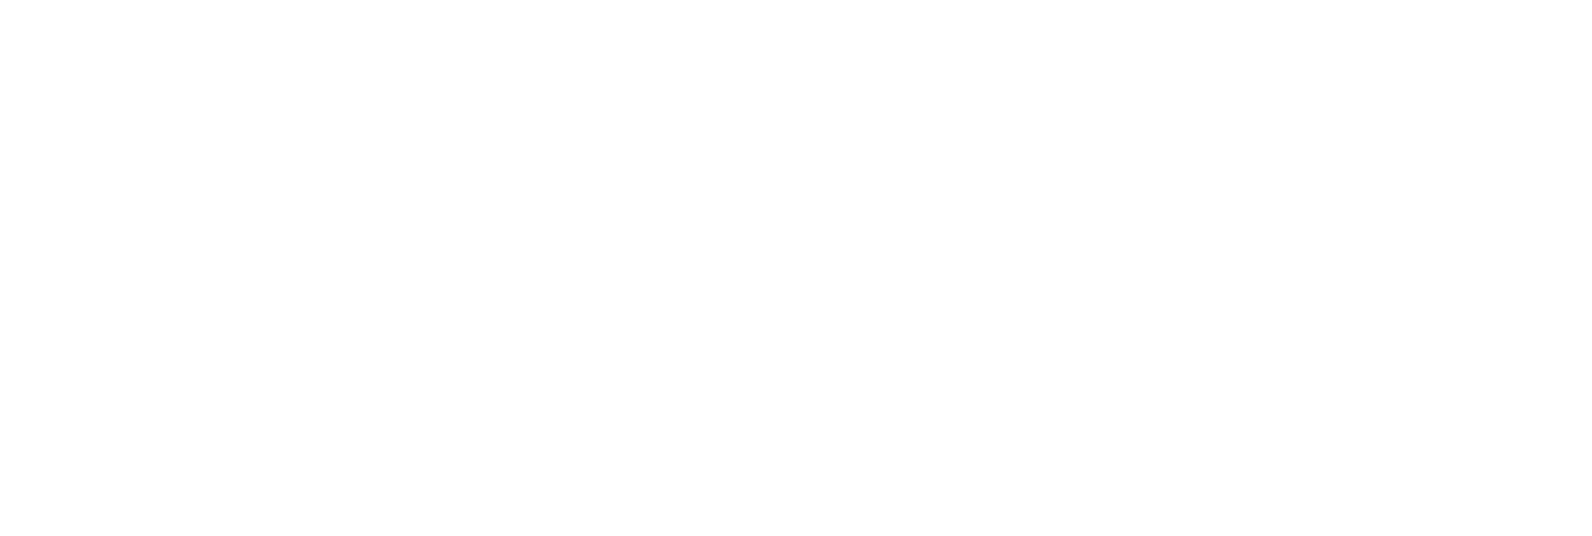 Netwealth logo grand pour les fonds sombres (PNG transparent)